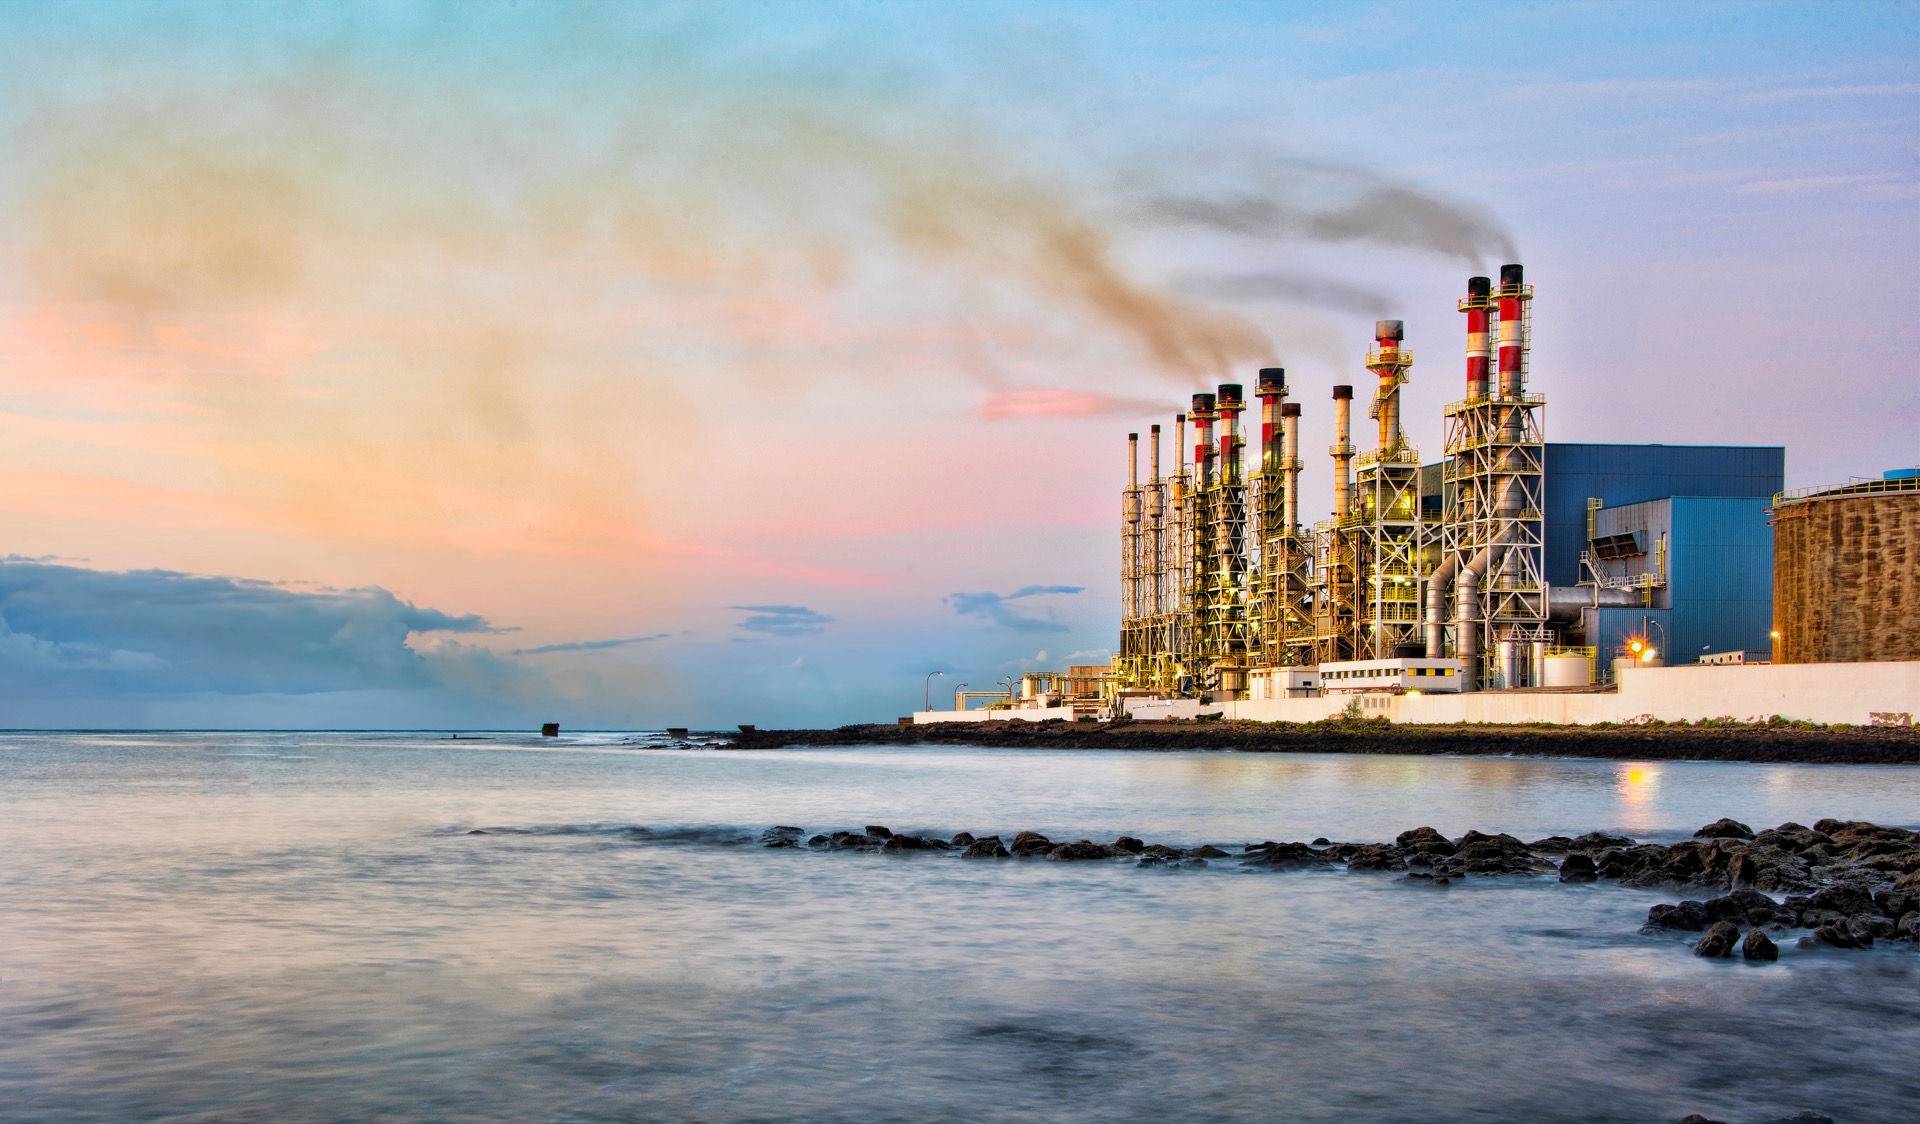 L’usine de dessalement de l’eau de mer à Arecife, en Espagne, sur l’île de Lanzarote. © Gordon, Adobe Stock